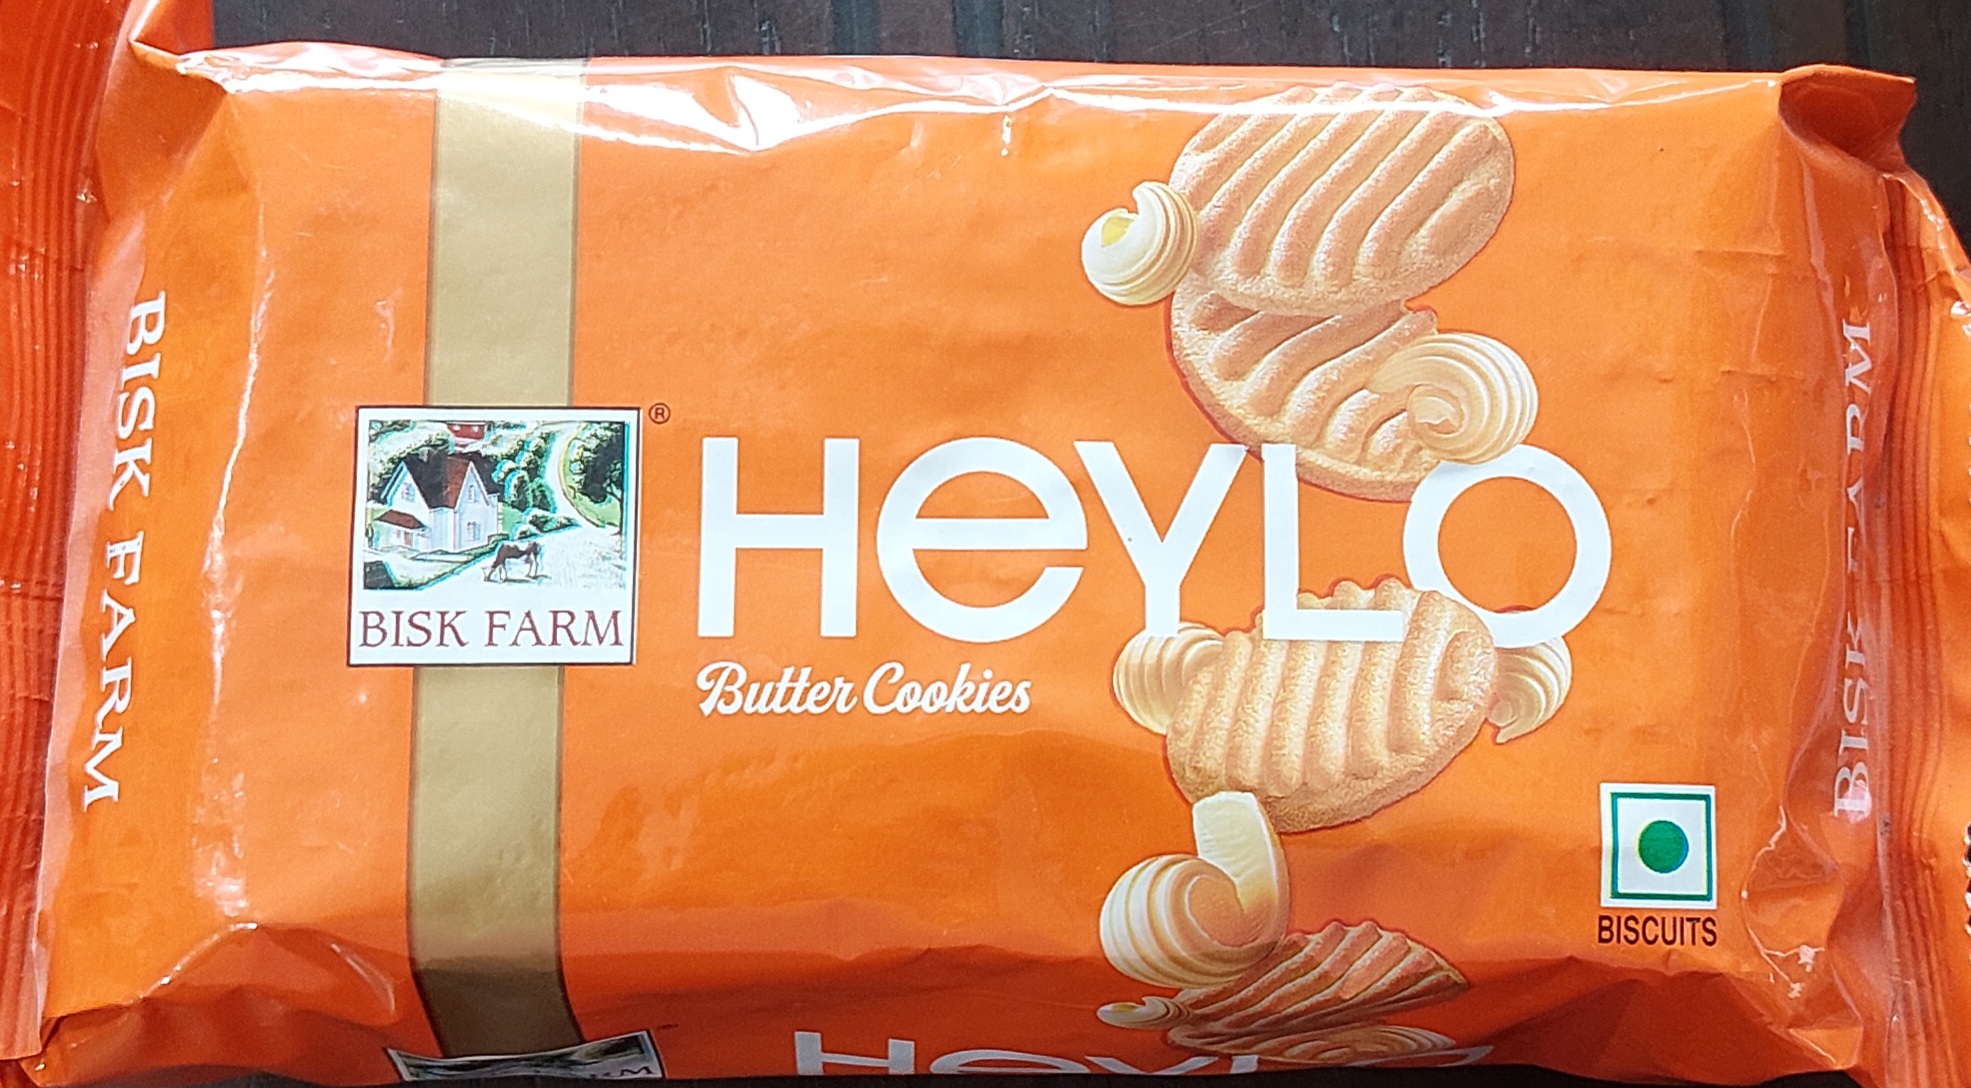 Heylo Butter Cookies – Bisk Farm Biscuits – 200 Gram